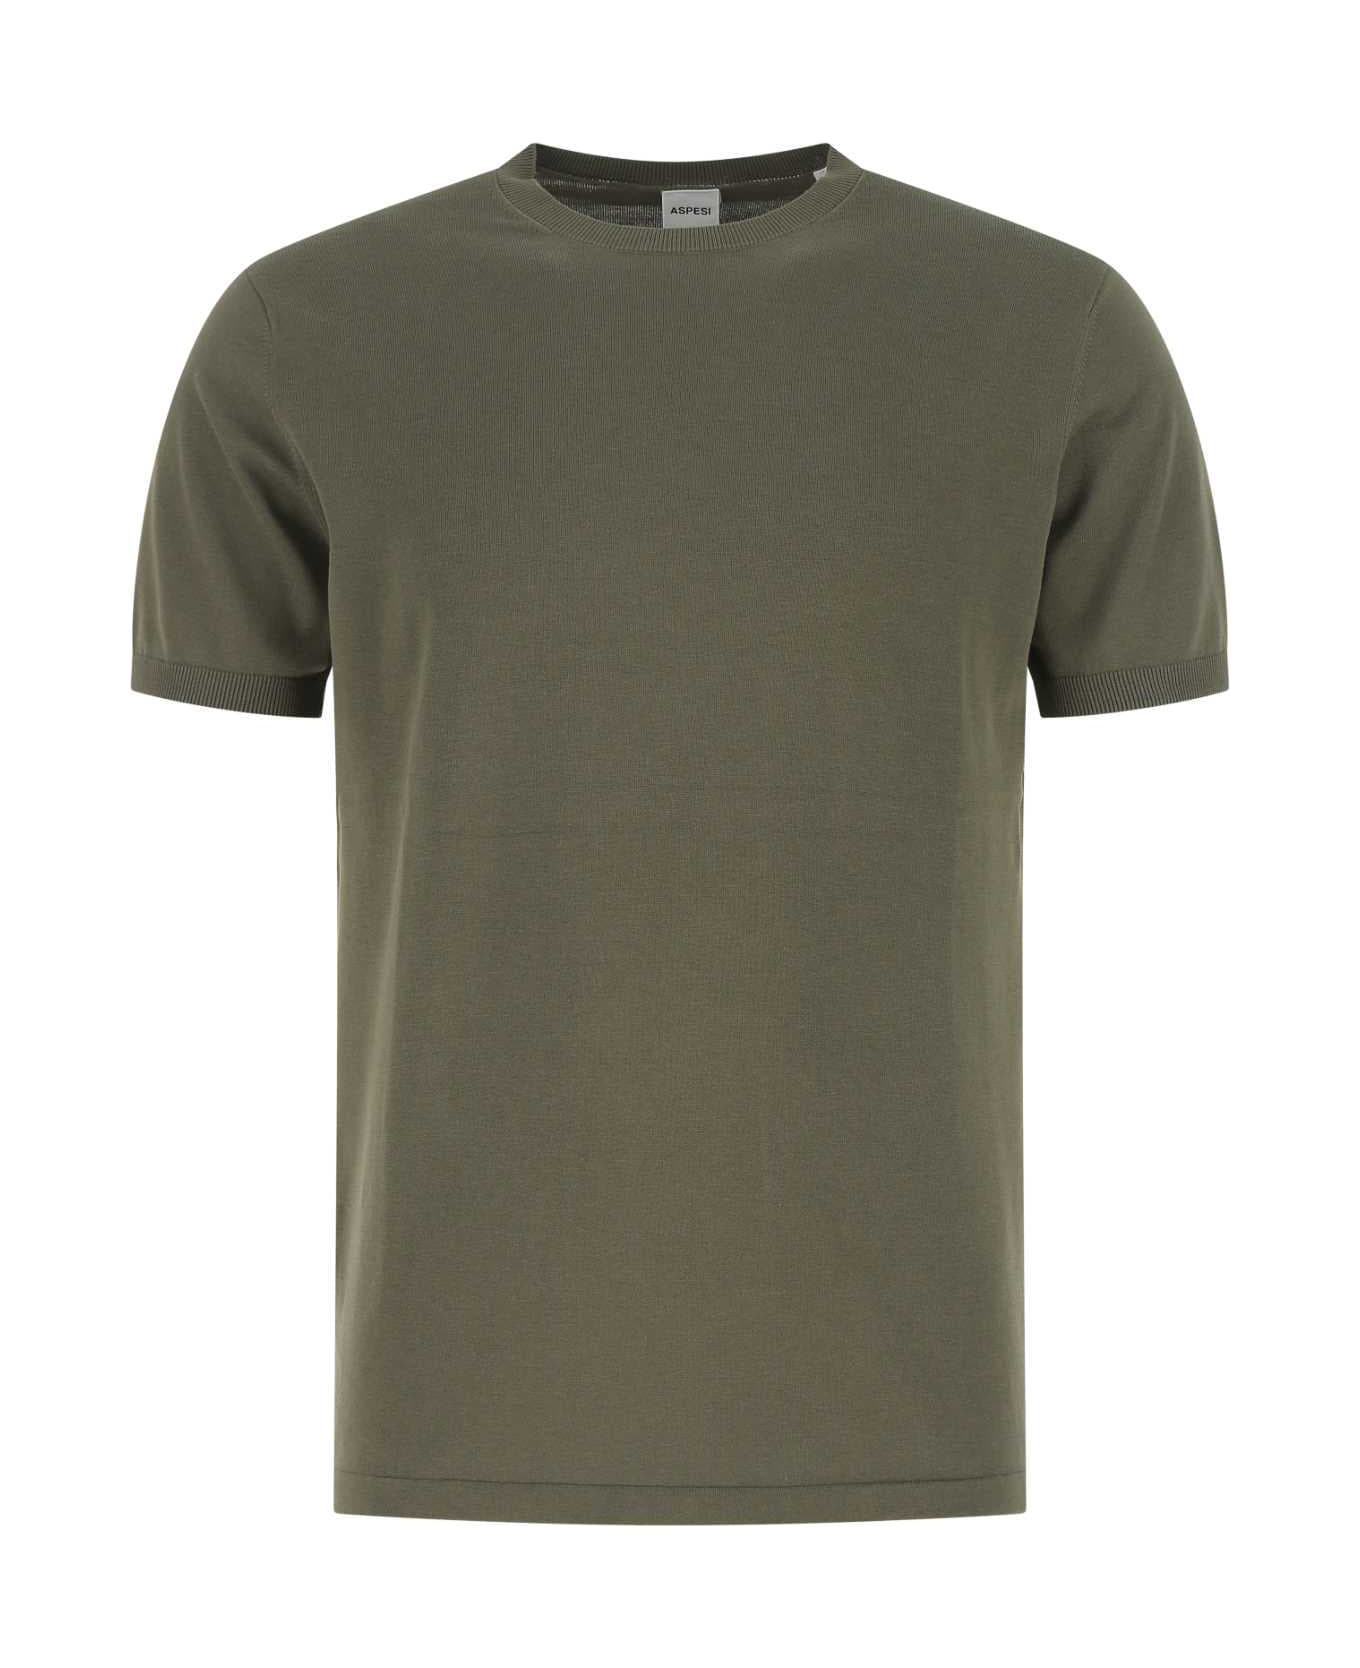 Aspesi Olive Green Cotton T-shirt - 01380 シャツ